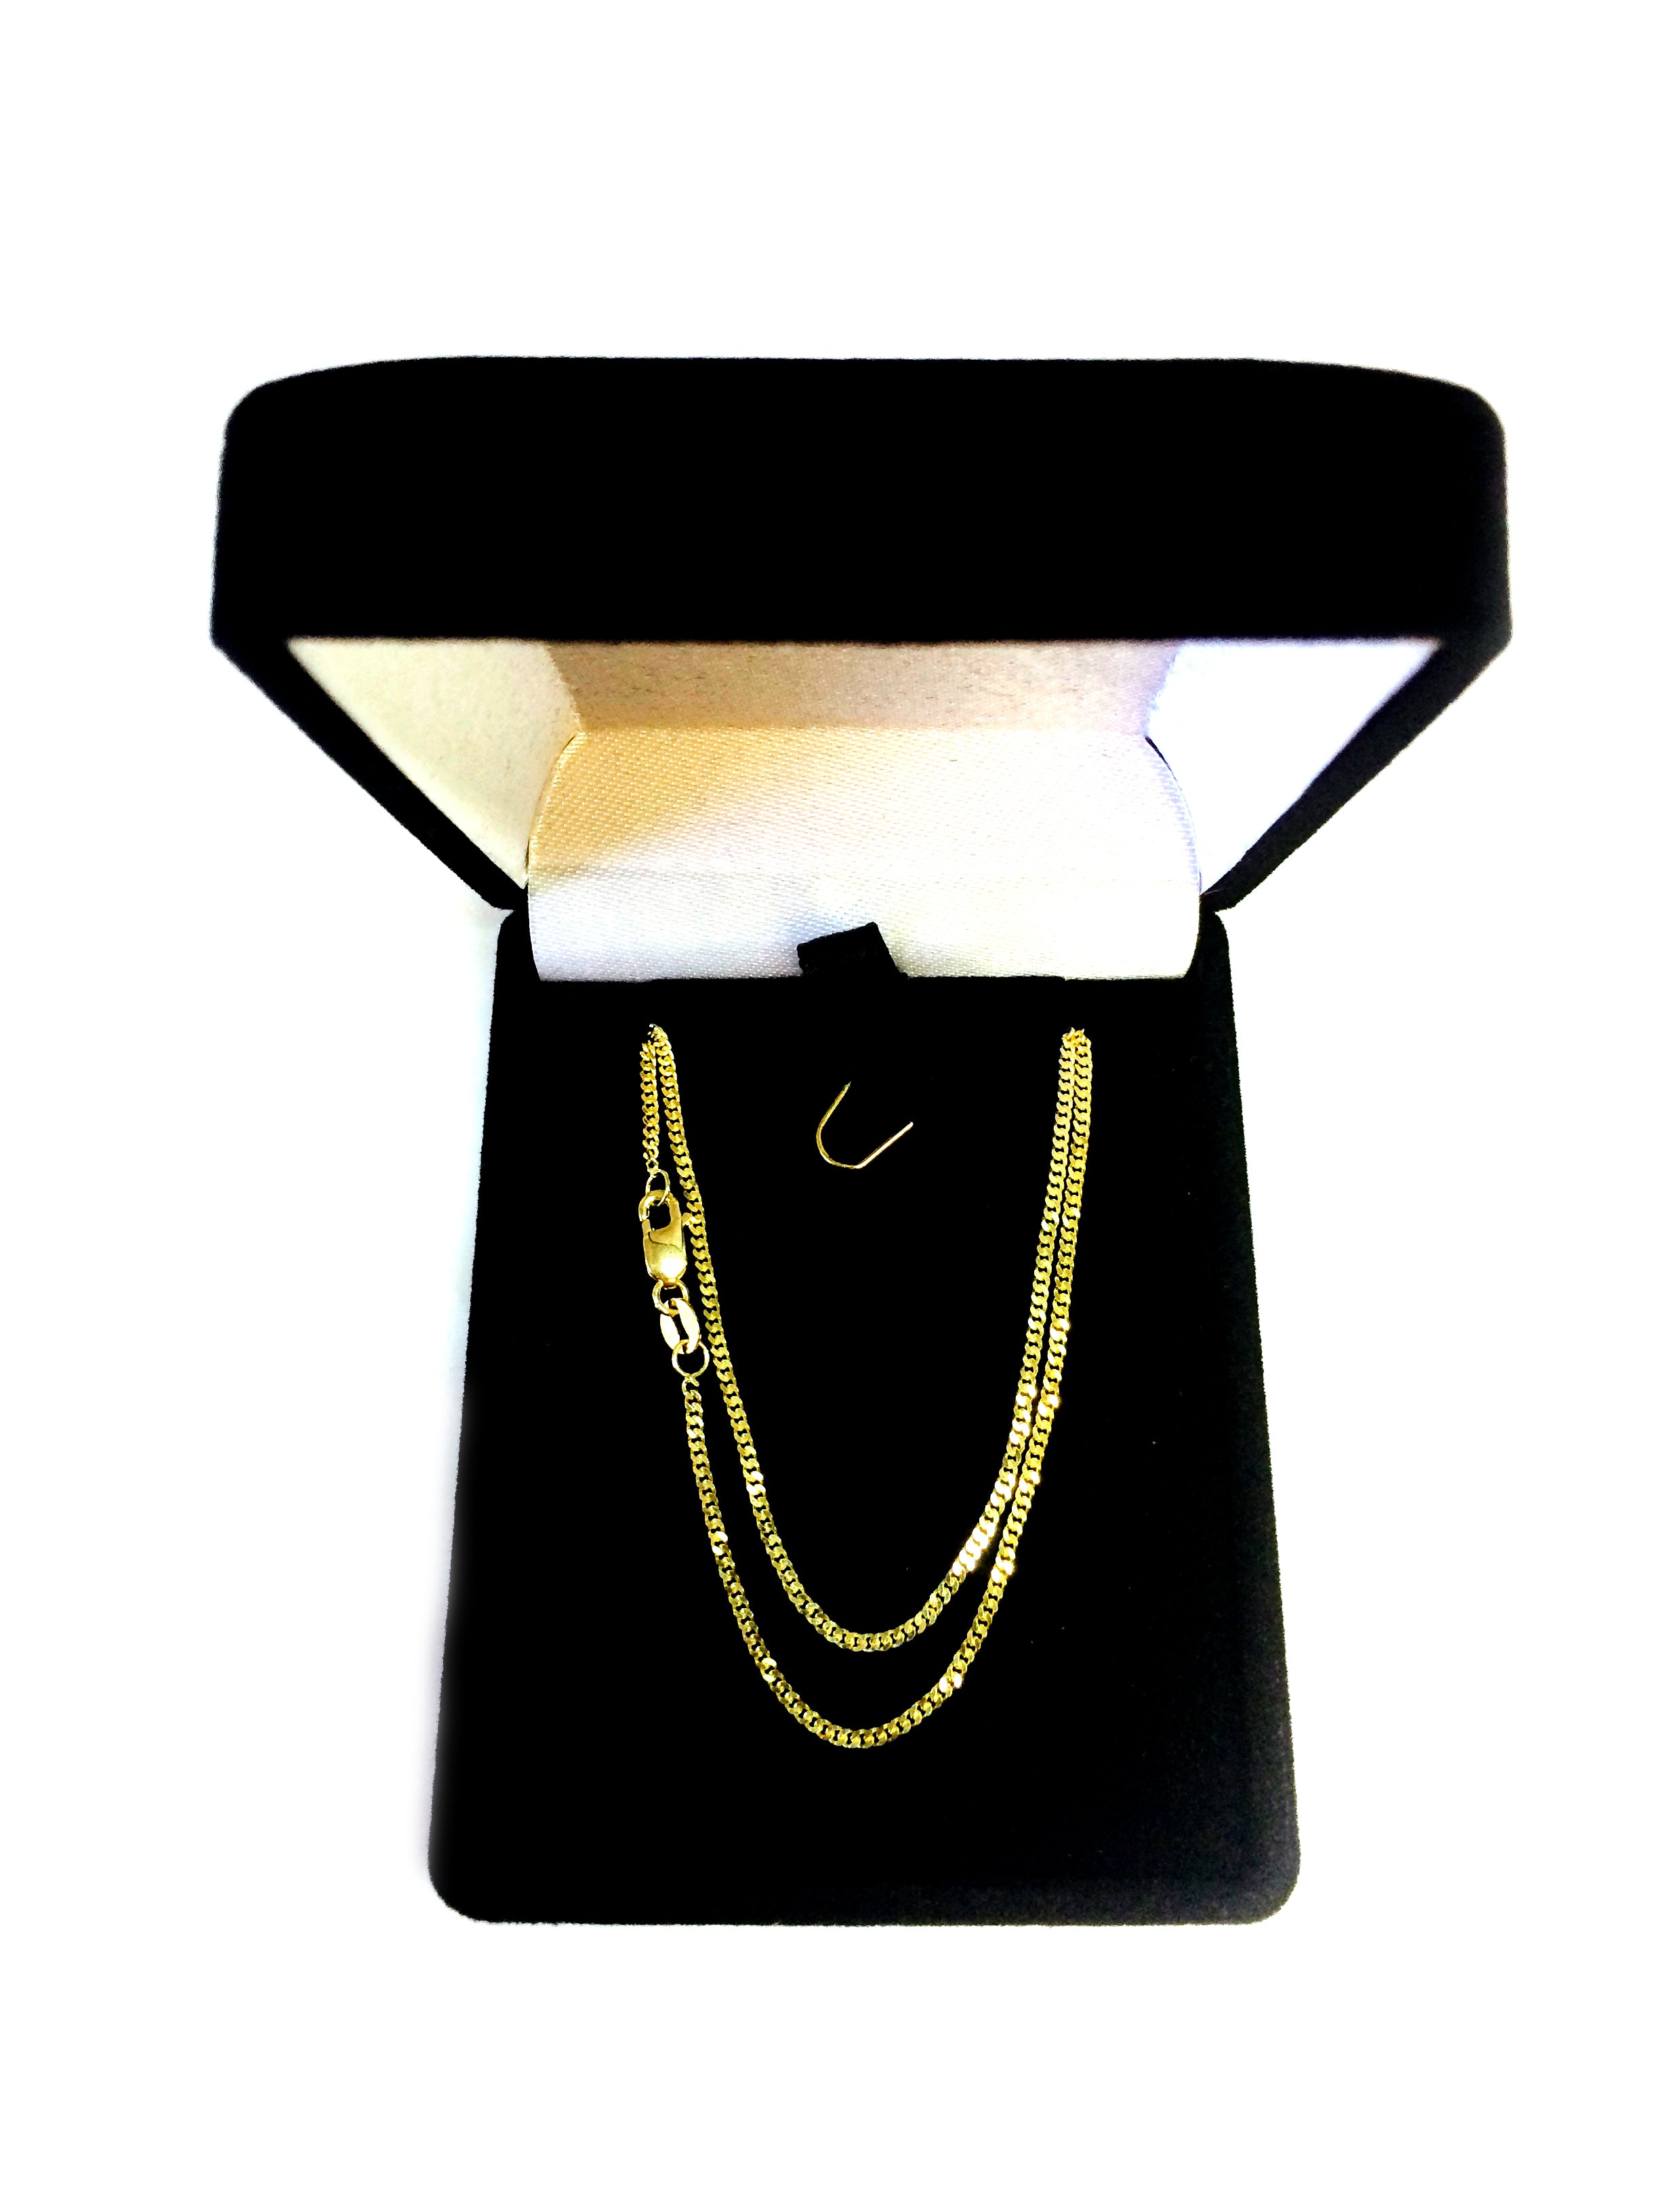 Collana a catena Gourmette in oro giallo 14k, gioielli di design pregiati da 1,5 mm per uomini e donne